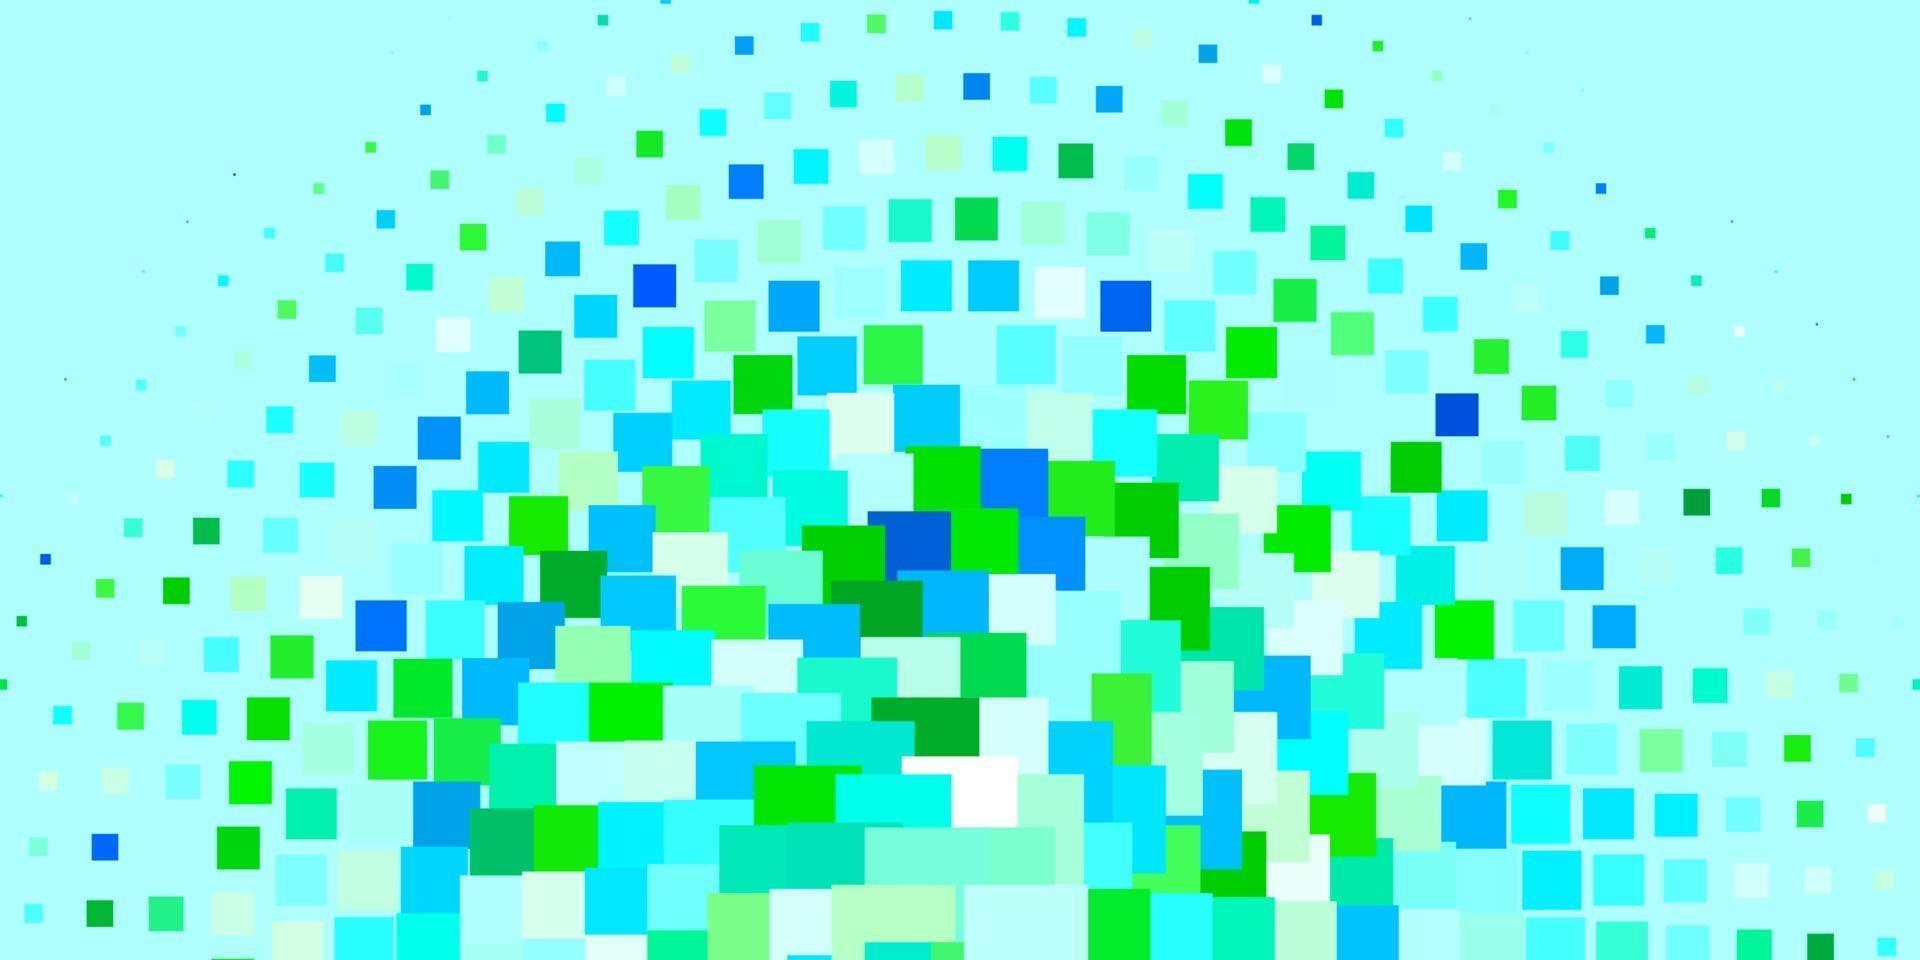 ljusblå, grön vektormall i rektanglar. vektor